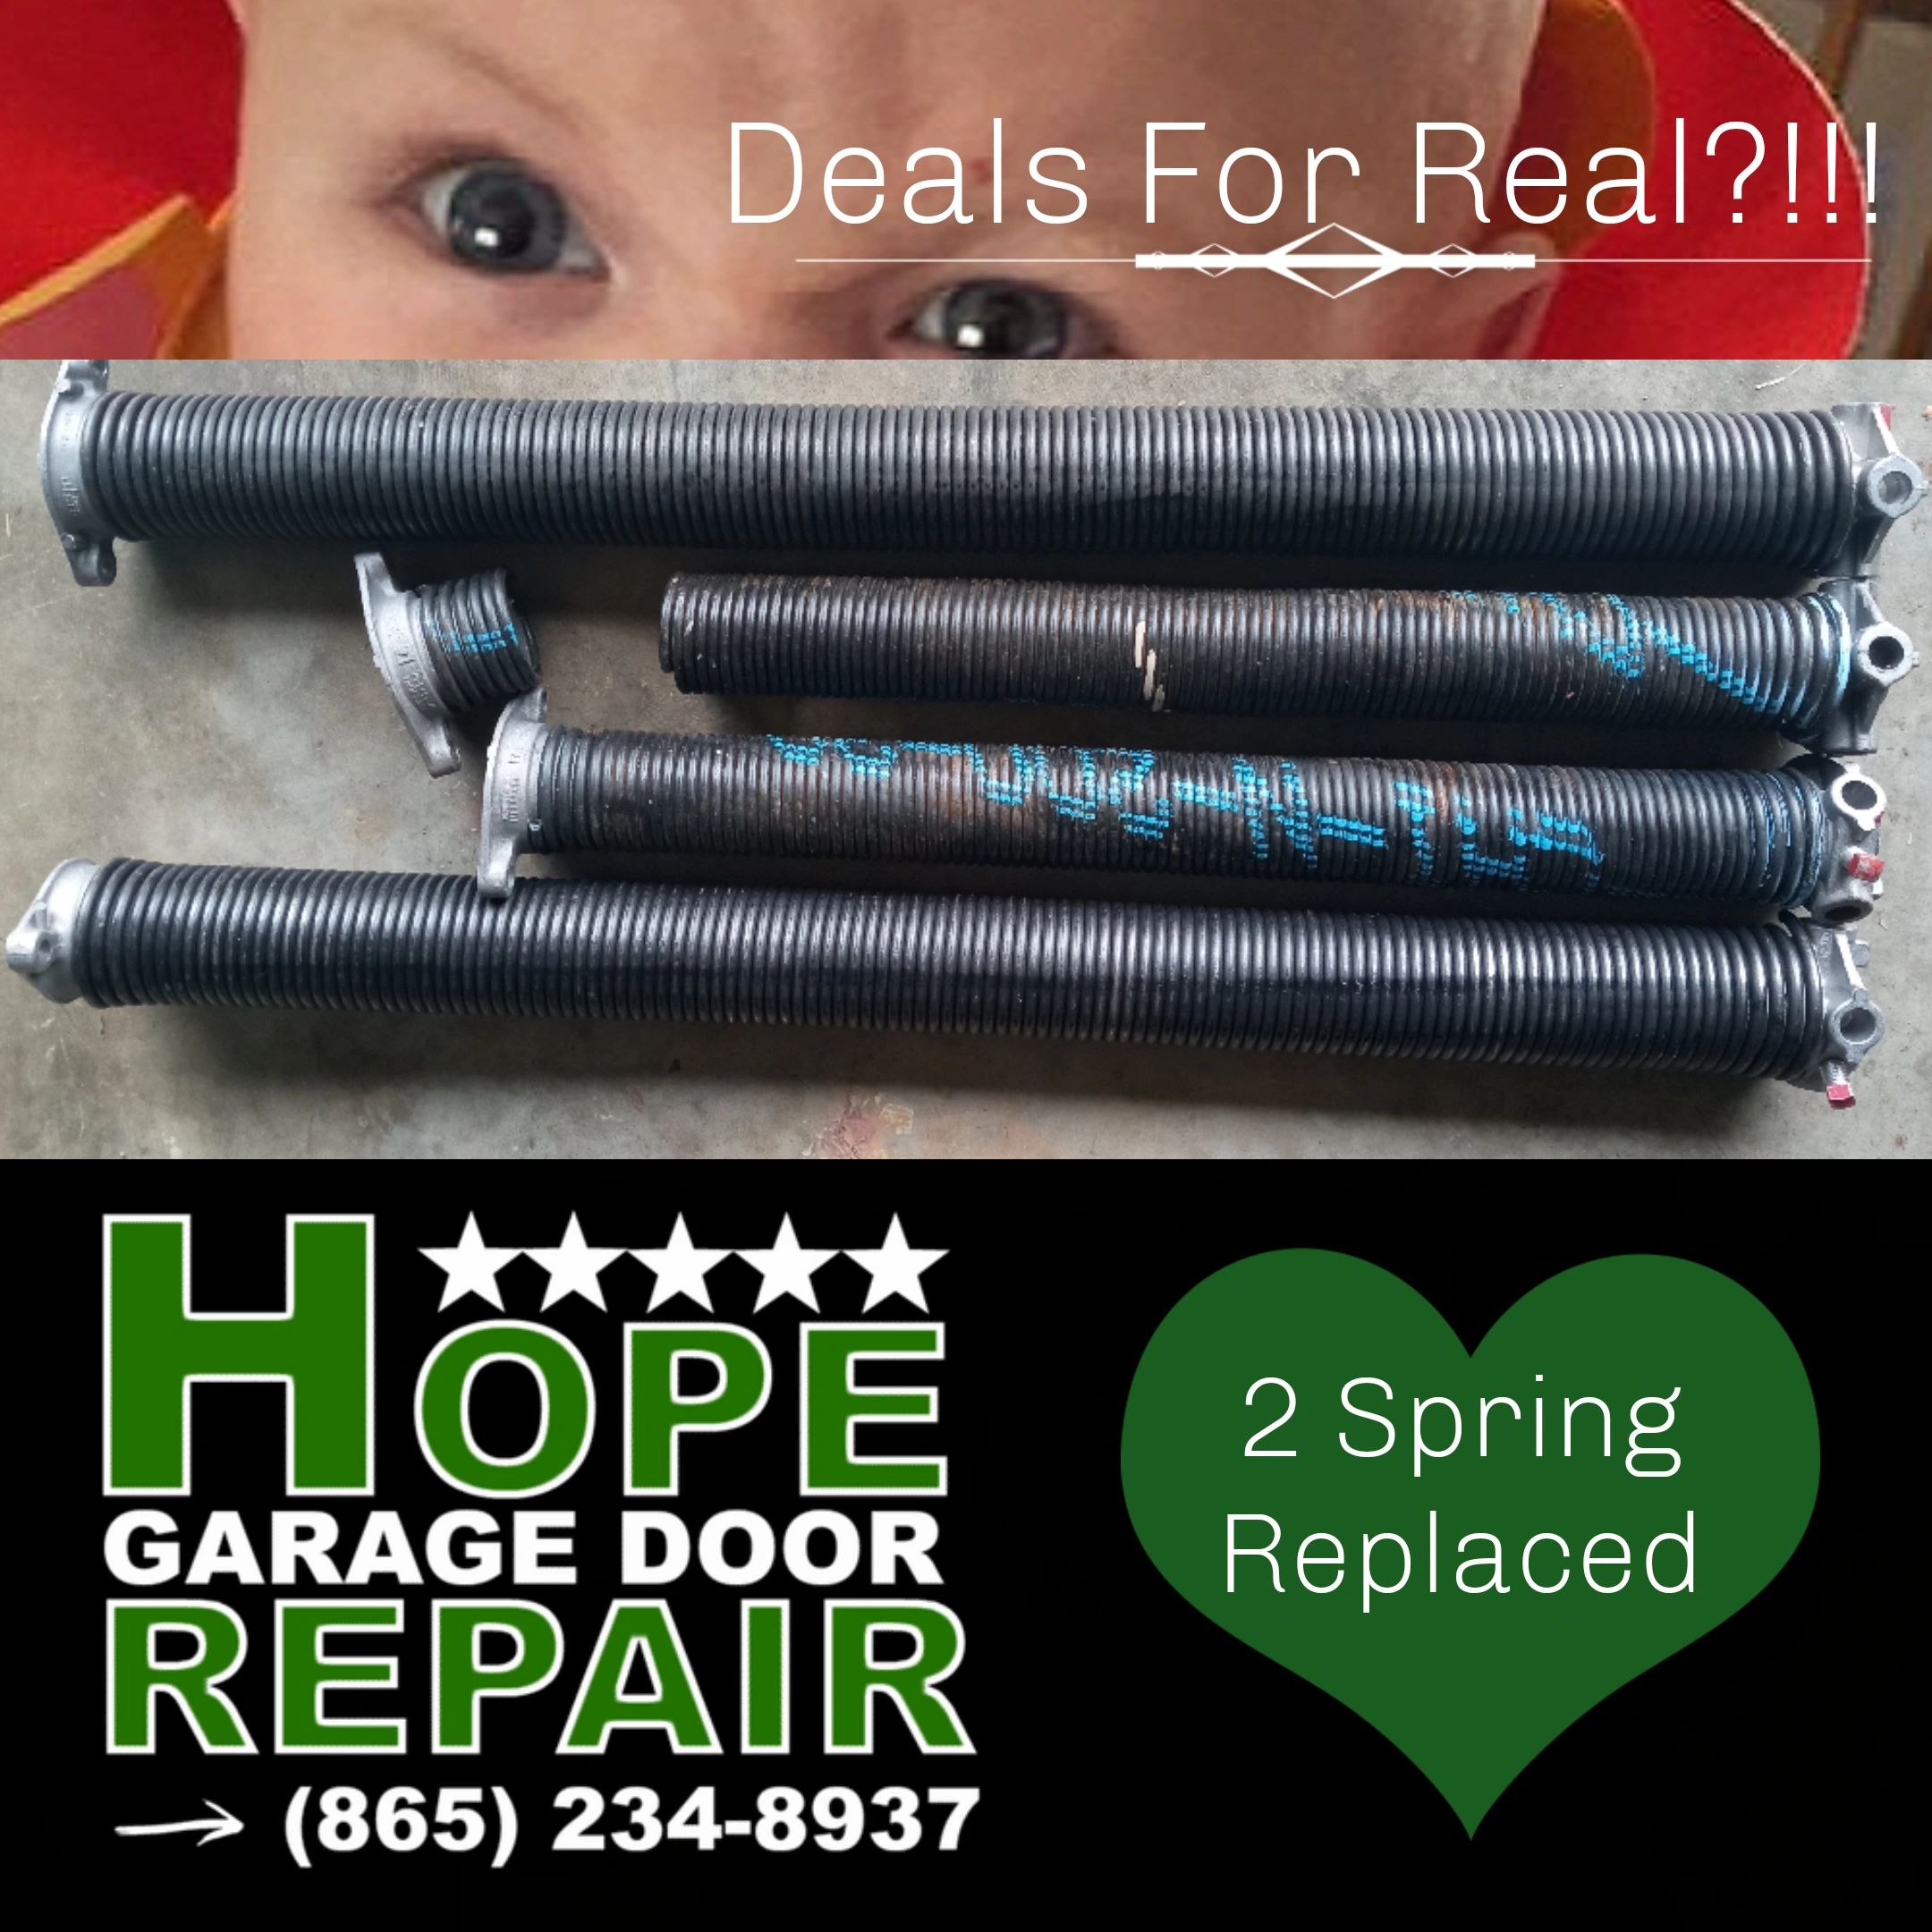 2 car garage door torsion springs
everyday deals by Hope Garage Door Repair.